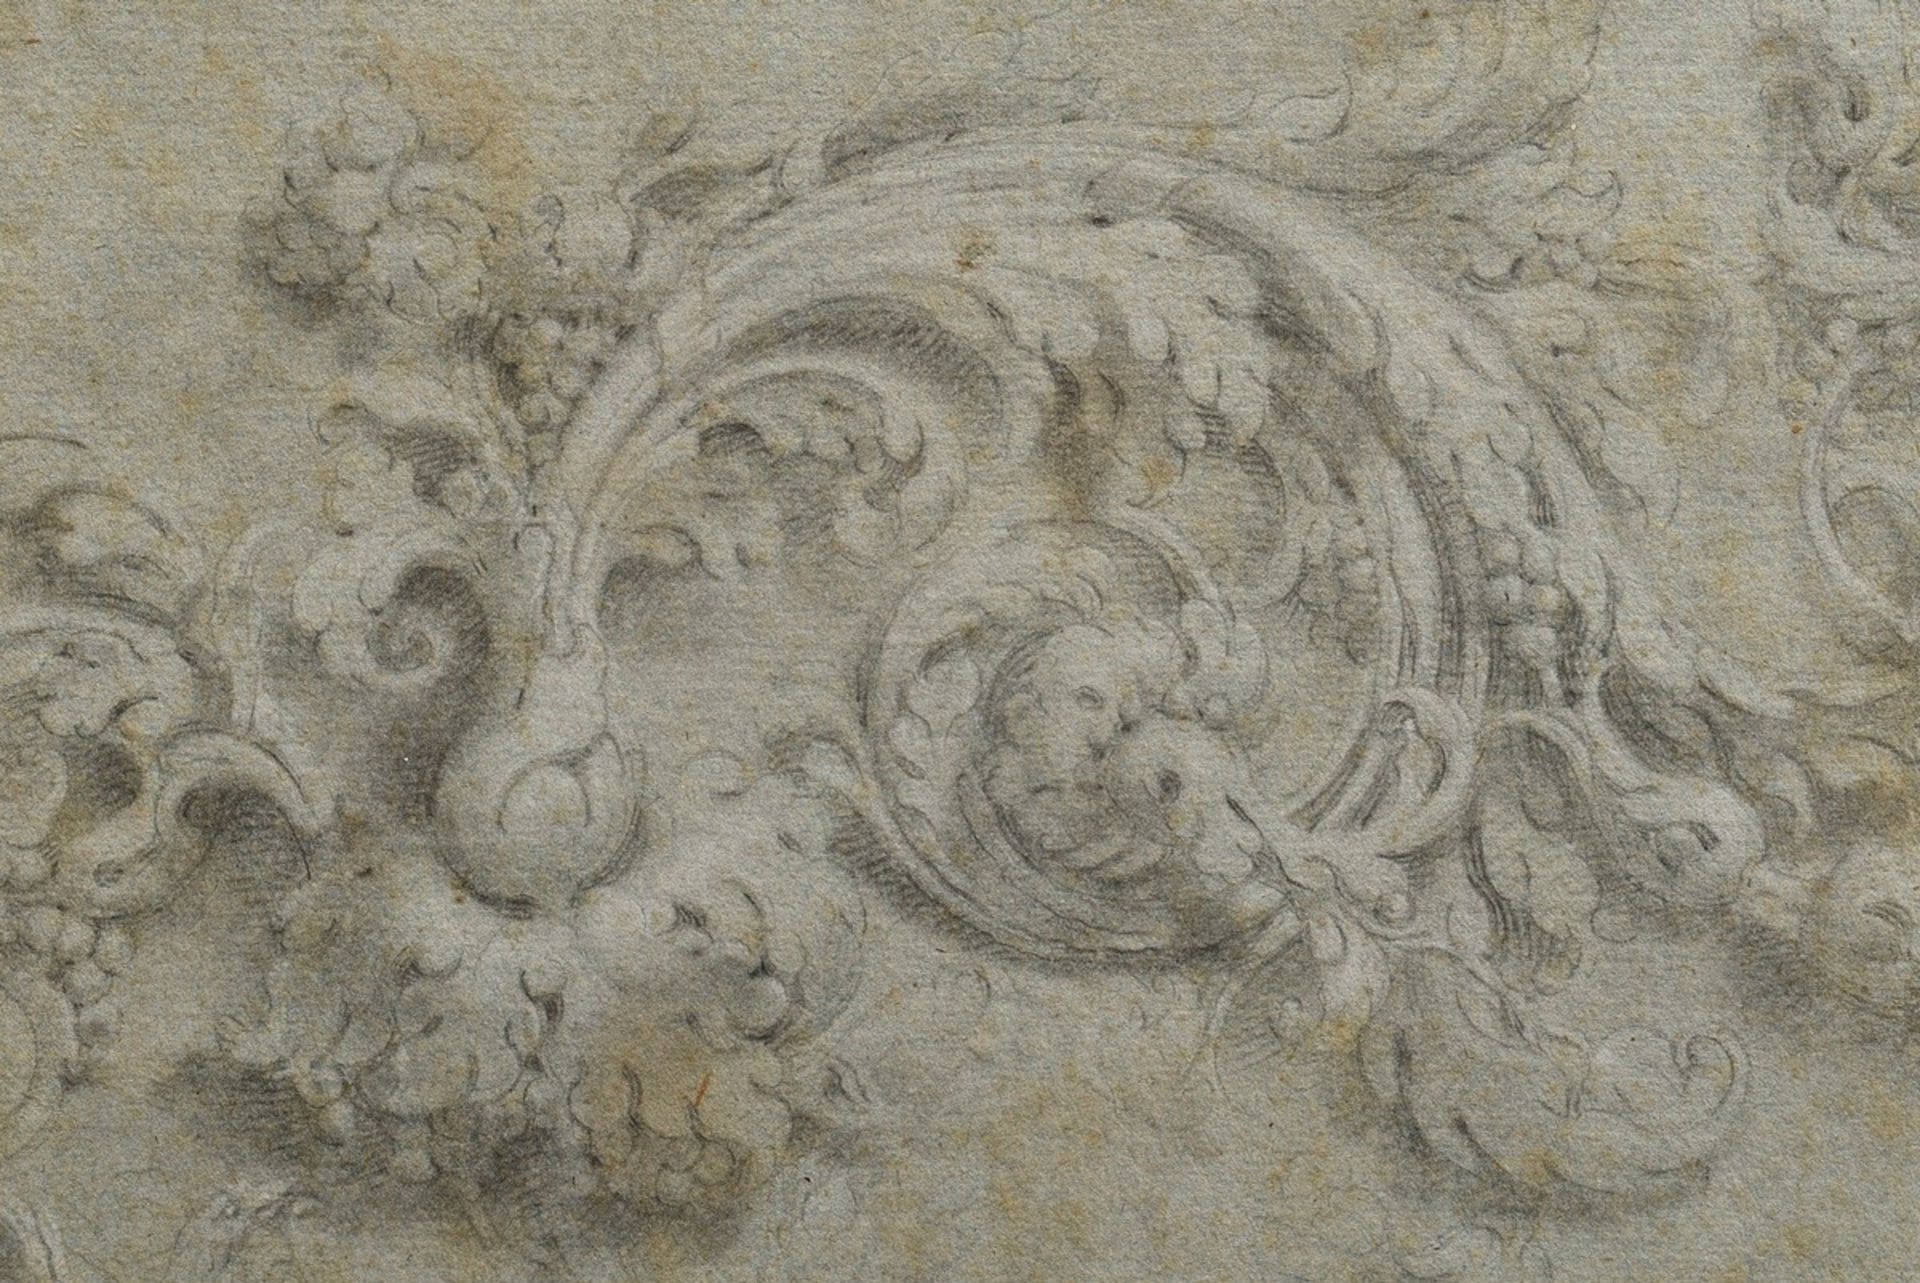 Unbekannter Künstler des 18.Jh. "Adler mit Rankenornament", Bleistiftstudie auf blauem Tonpapier, a - Bild 2 aus 3